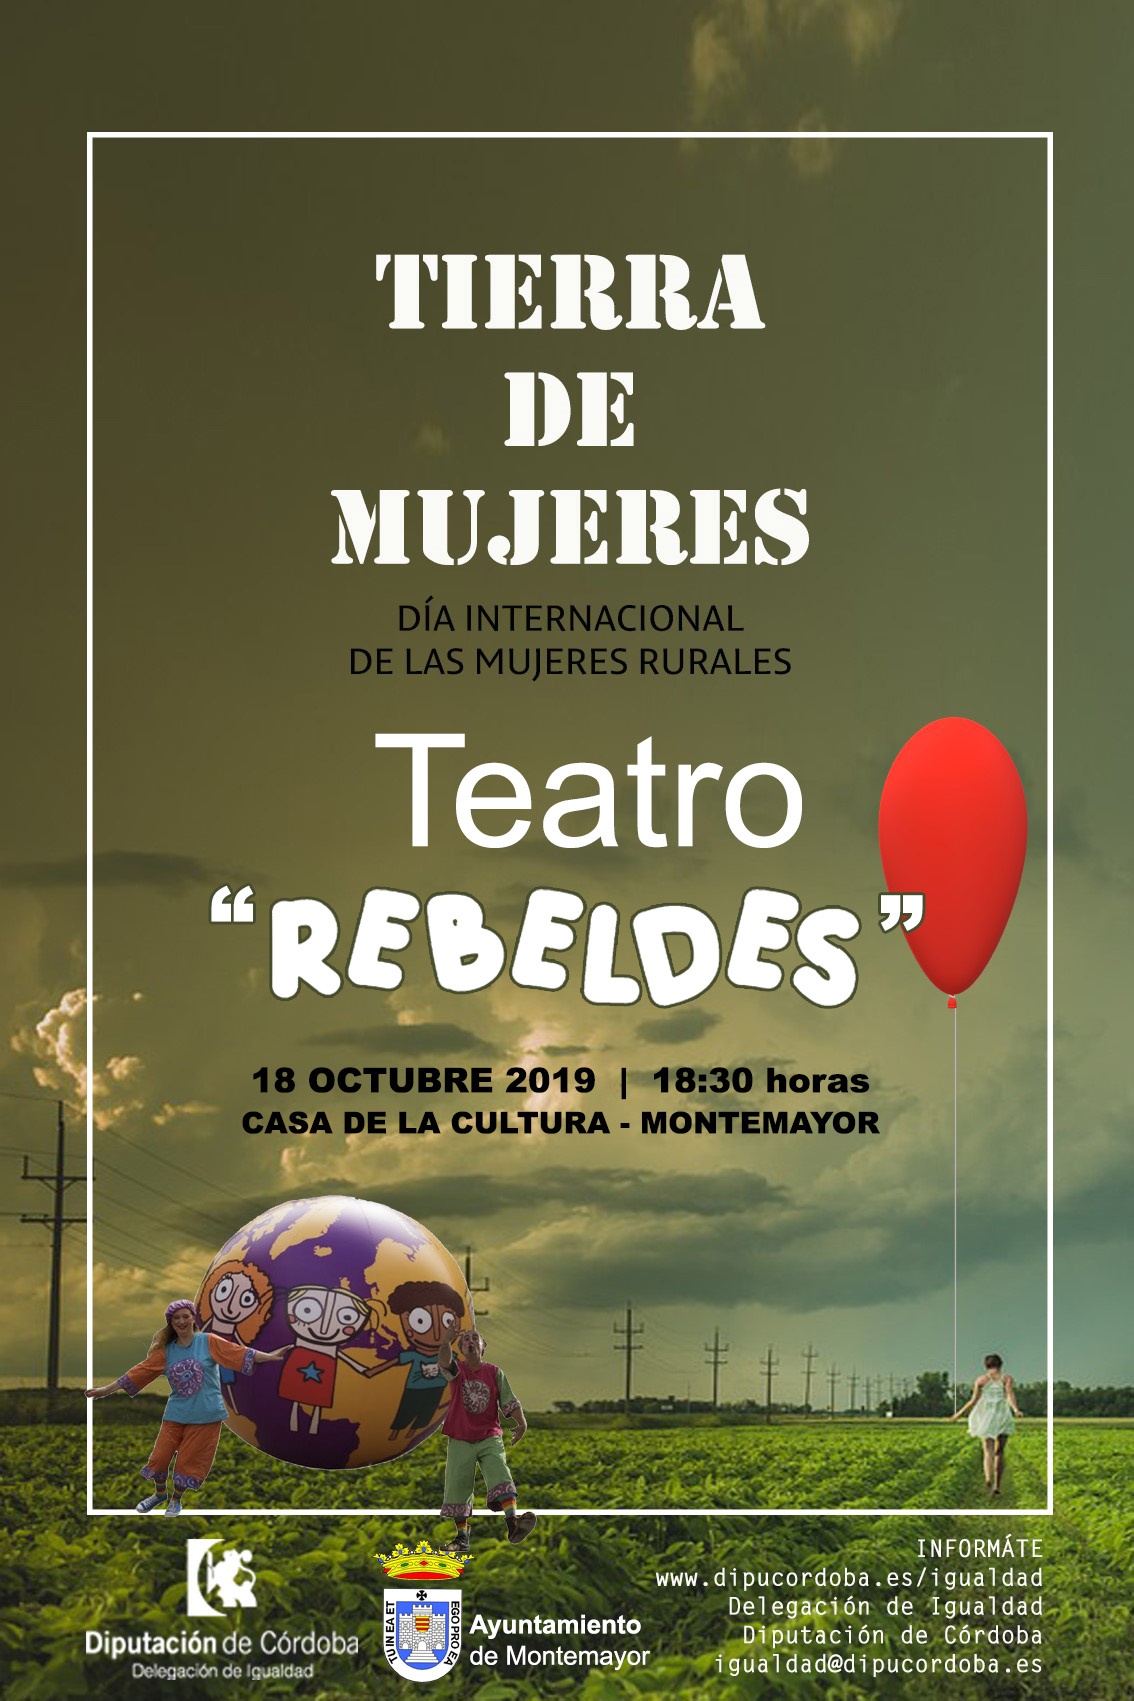 Tierra de Mujeres - Teatro "Rebeldes" 1